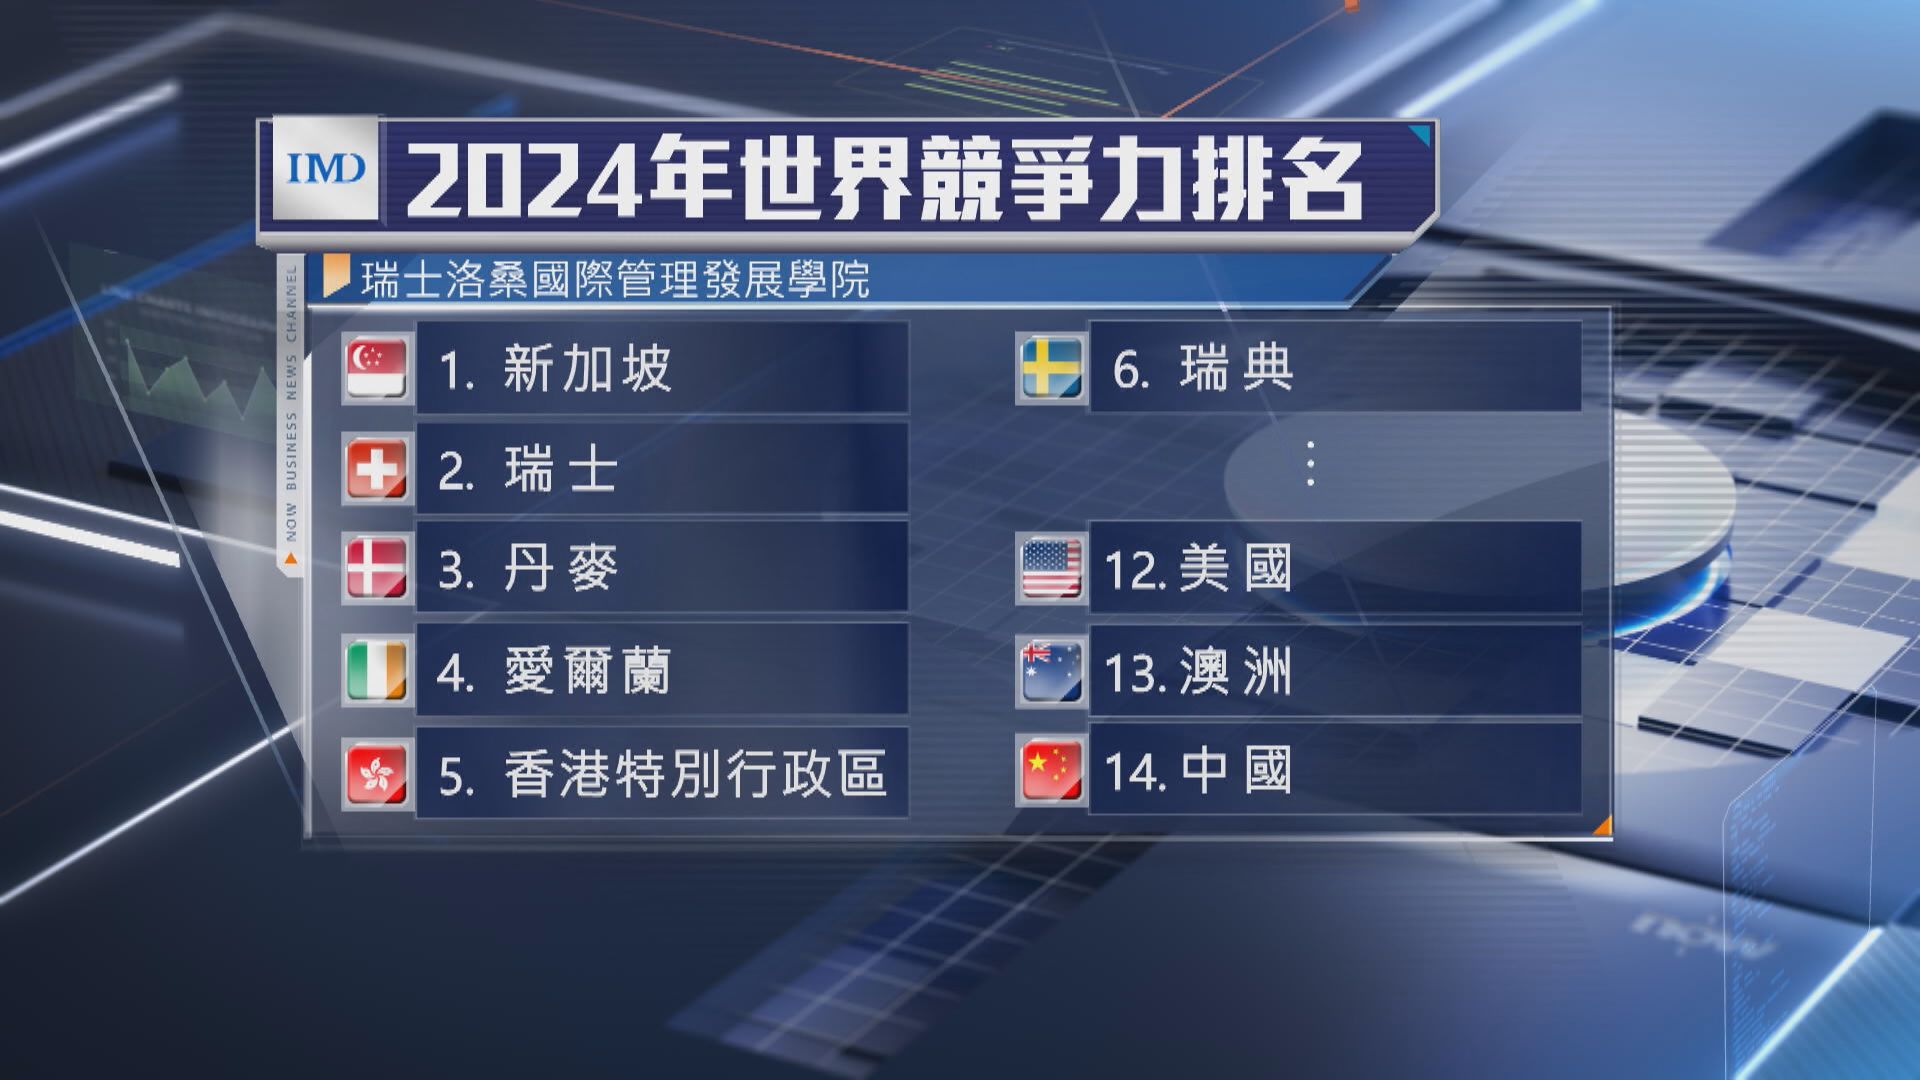 【IMD全球競爭力排行榜】香港連升兩級至第5位 新加坡相隔4年重奪No.1